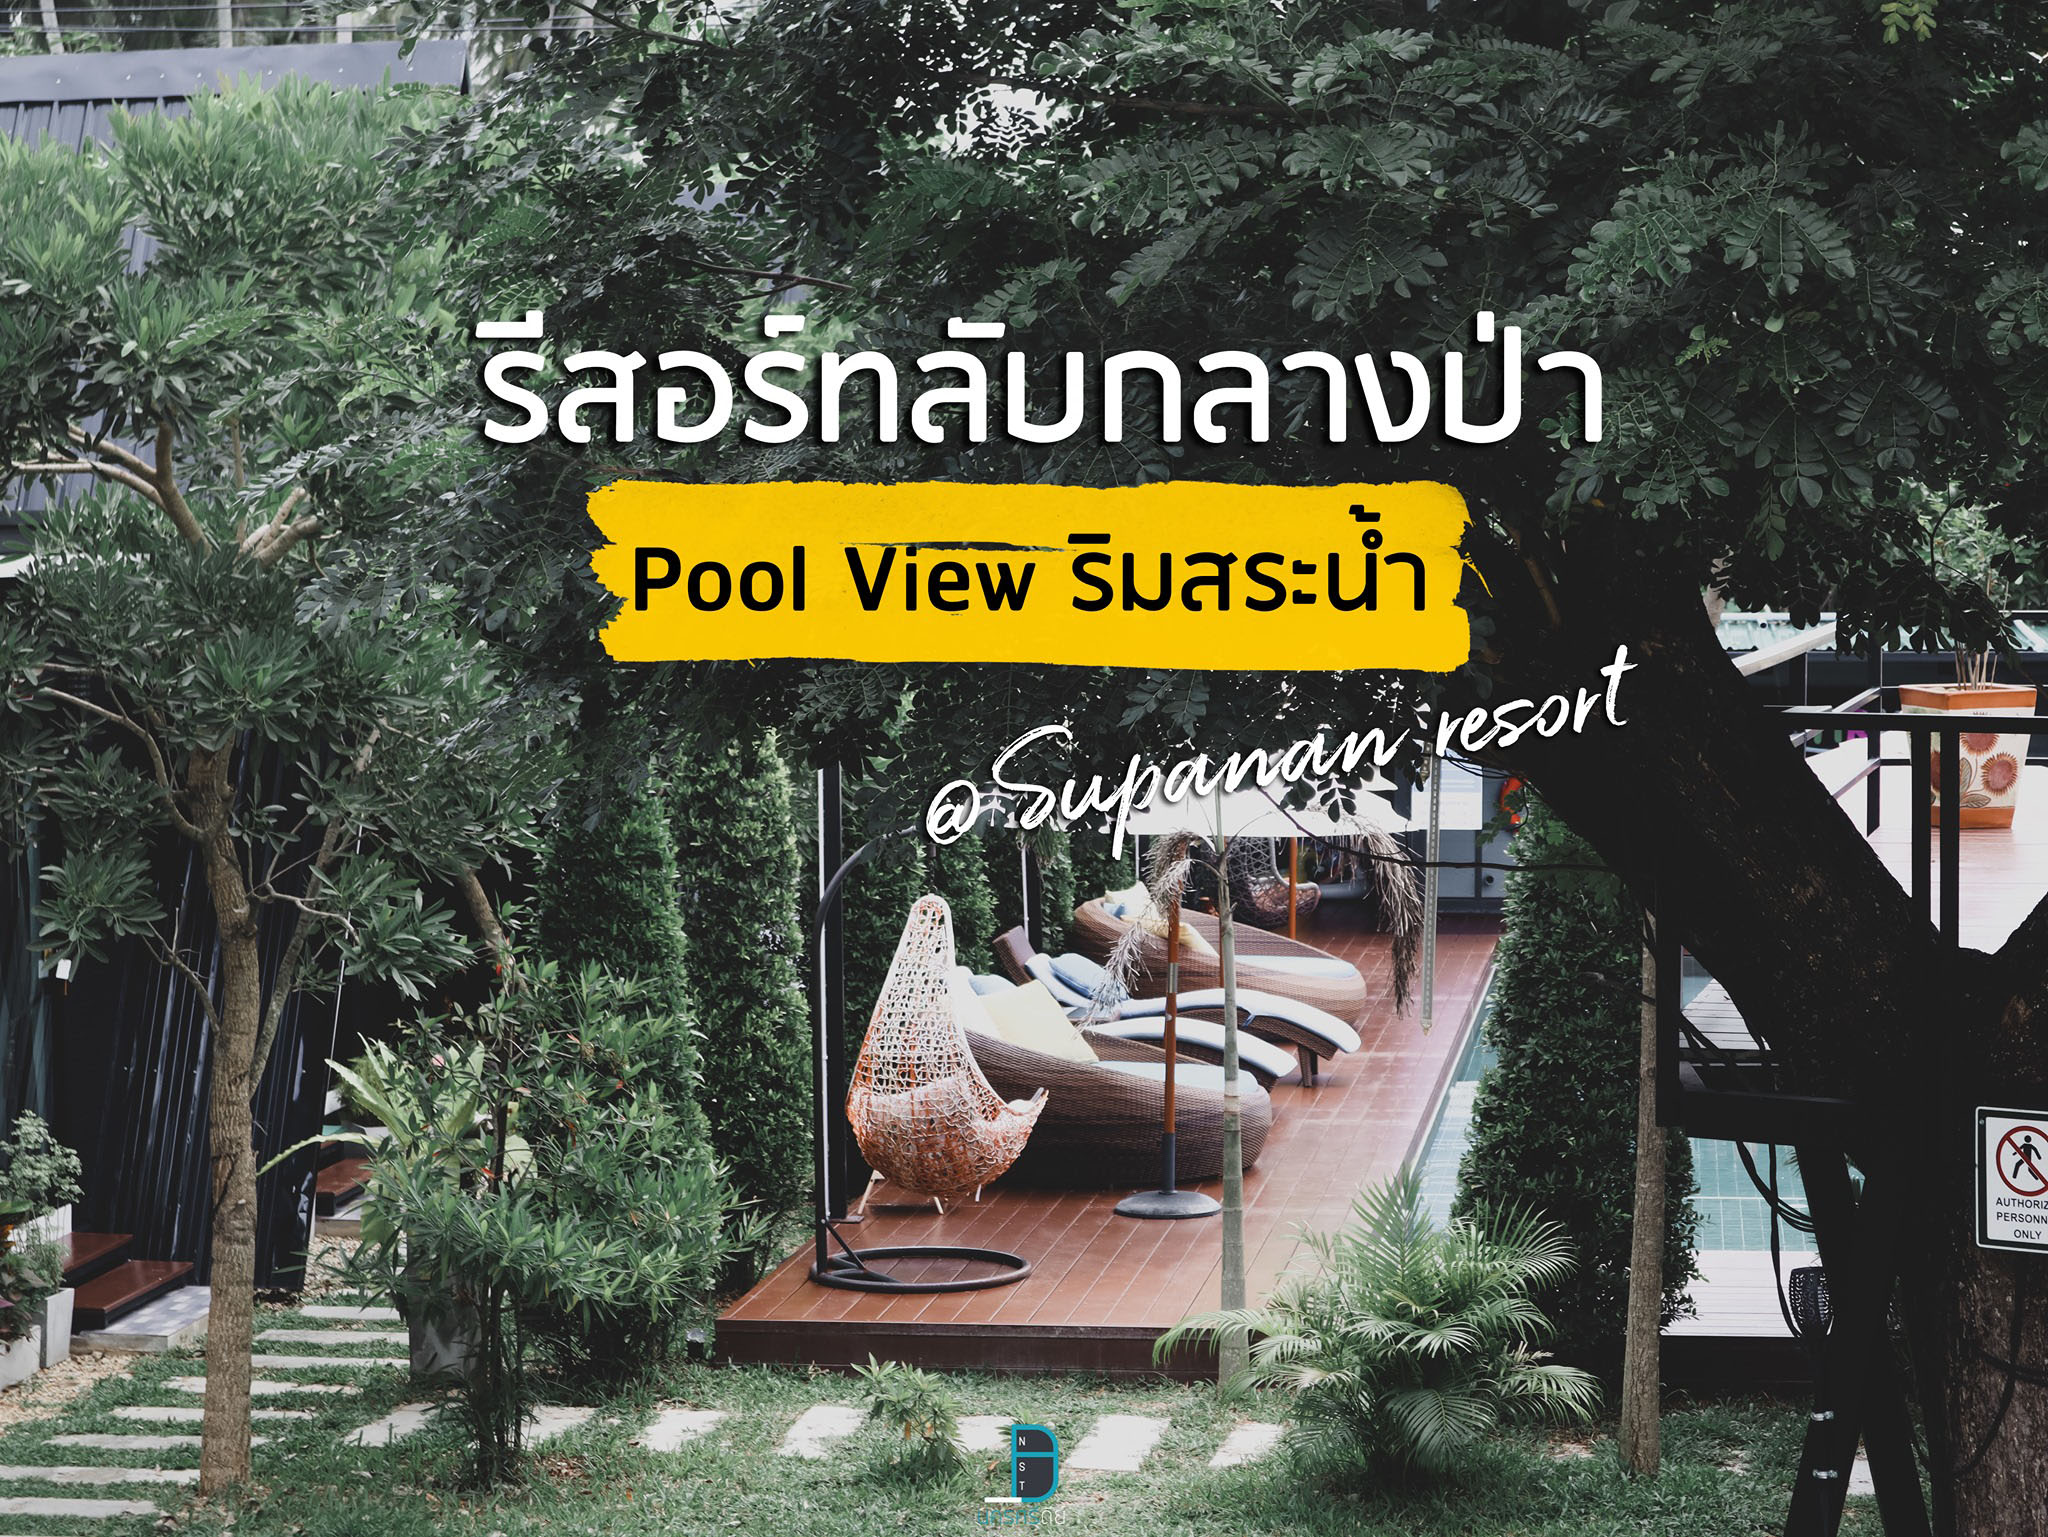  Supanan resort สุภานันท์รีสอร์ท พัทลุง ที่พักกลางป่าวิวสวย พร้อมสระว่ายน้ำ